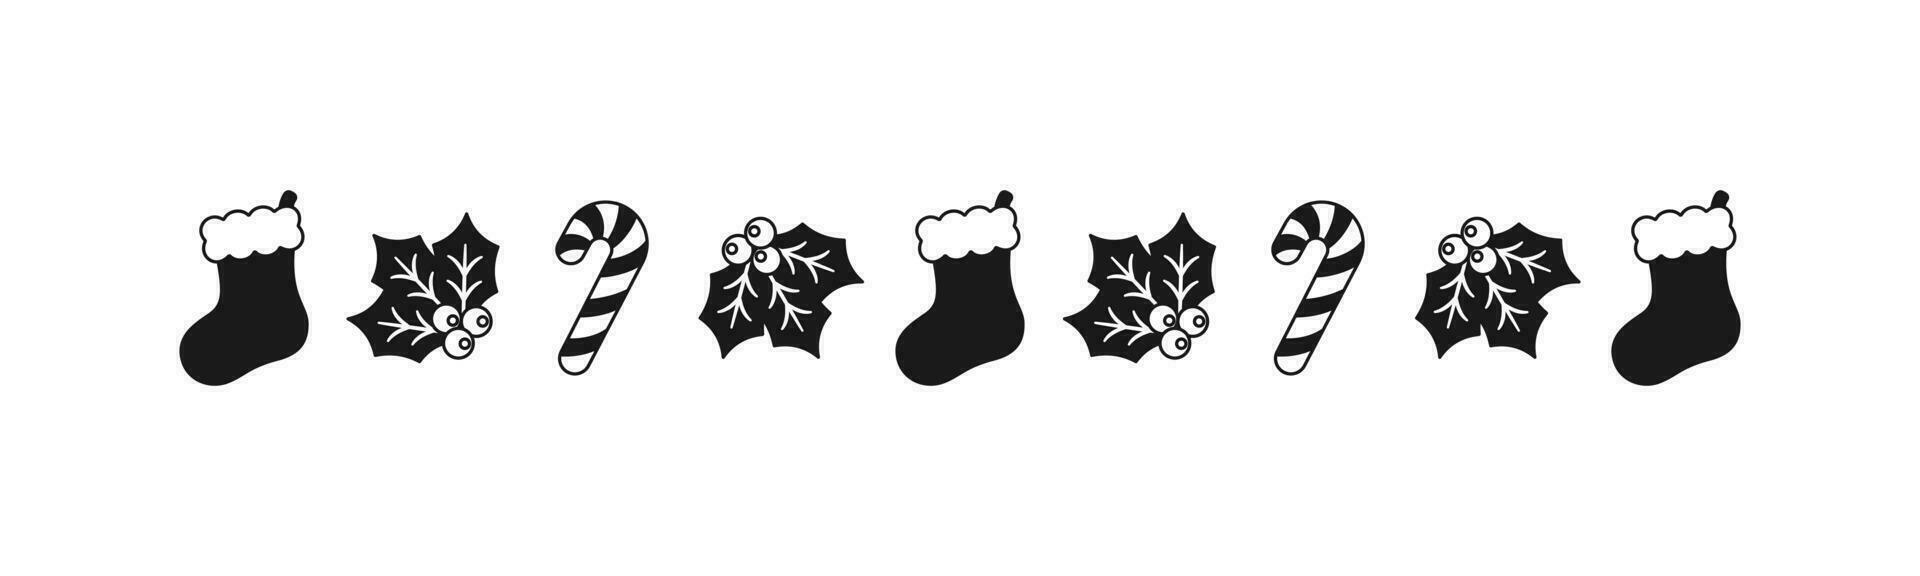 Kerstmis themed decoratief grens en tekst verdeler, Kerstmis kous, snoep riet en maretak patroon silhouet. vector illustratie.